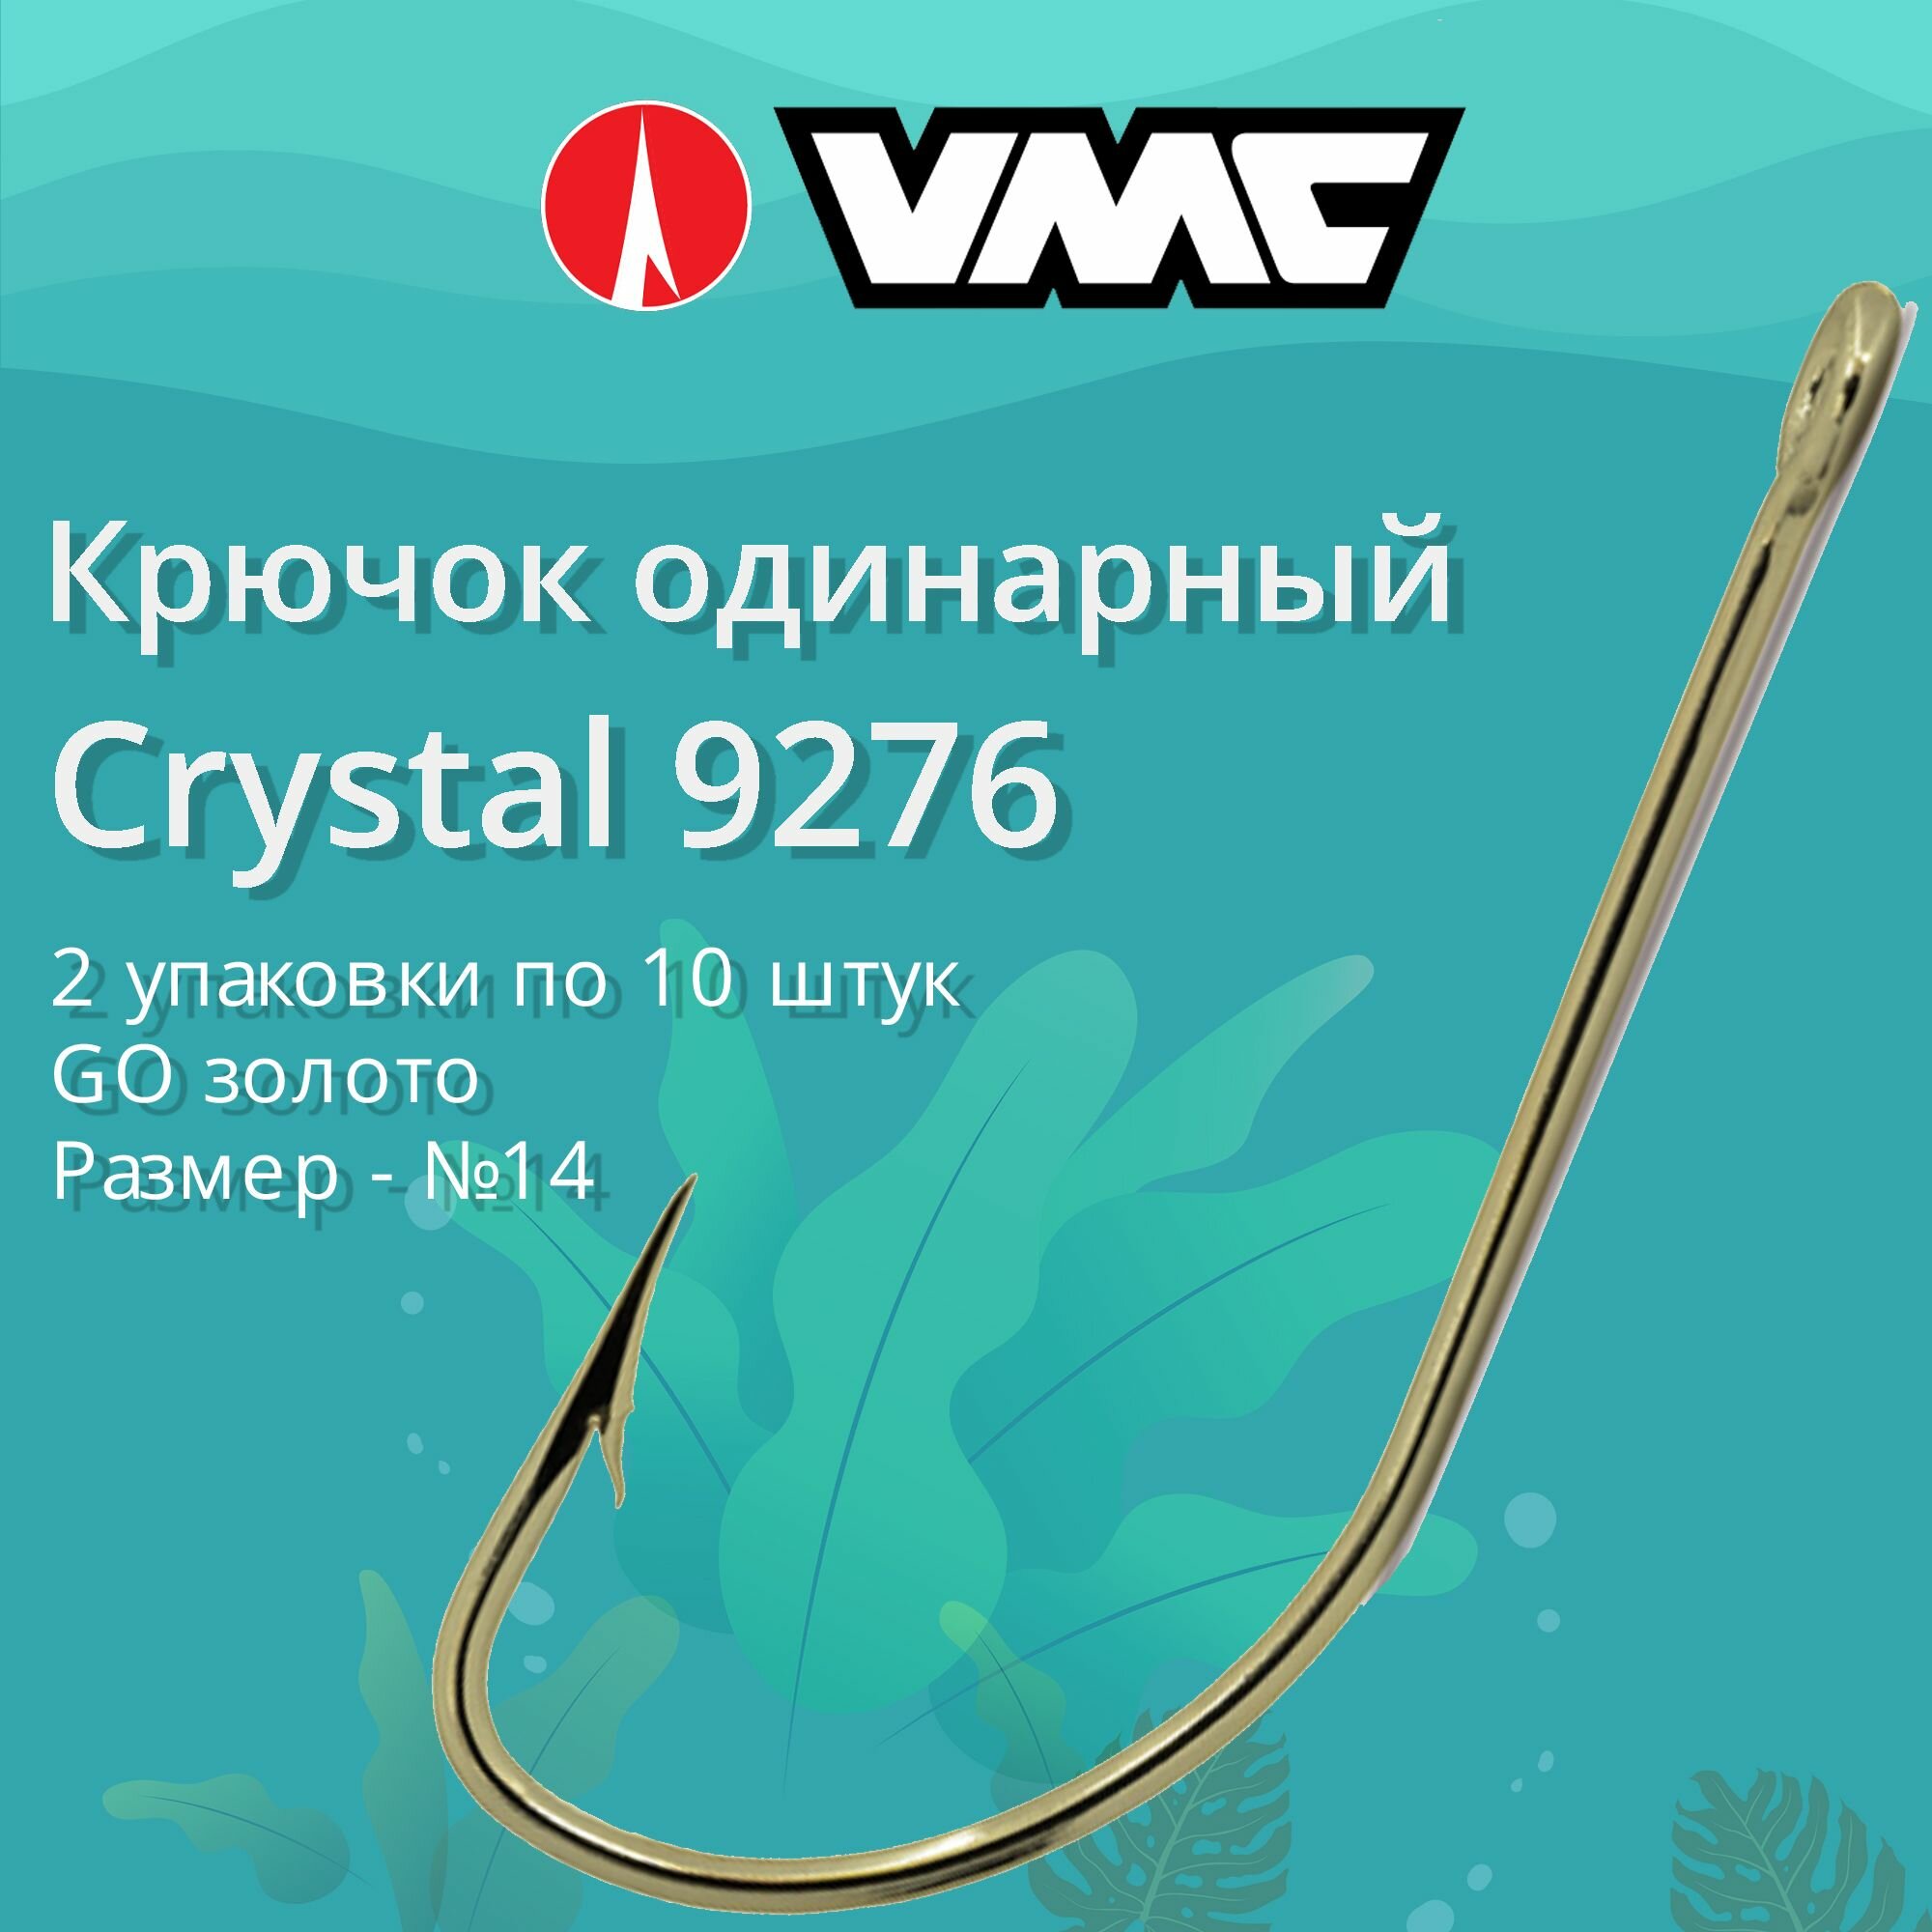 Крючки для рыбалки (одинарный) VMC Crystal 9276 GO (золото) №14 2 упаковки по 10 штук